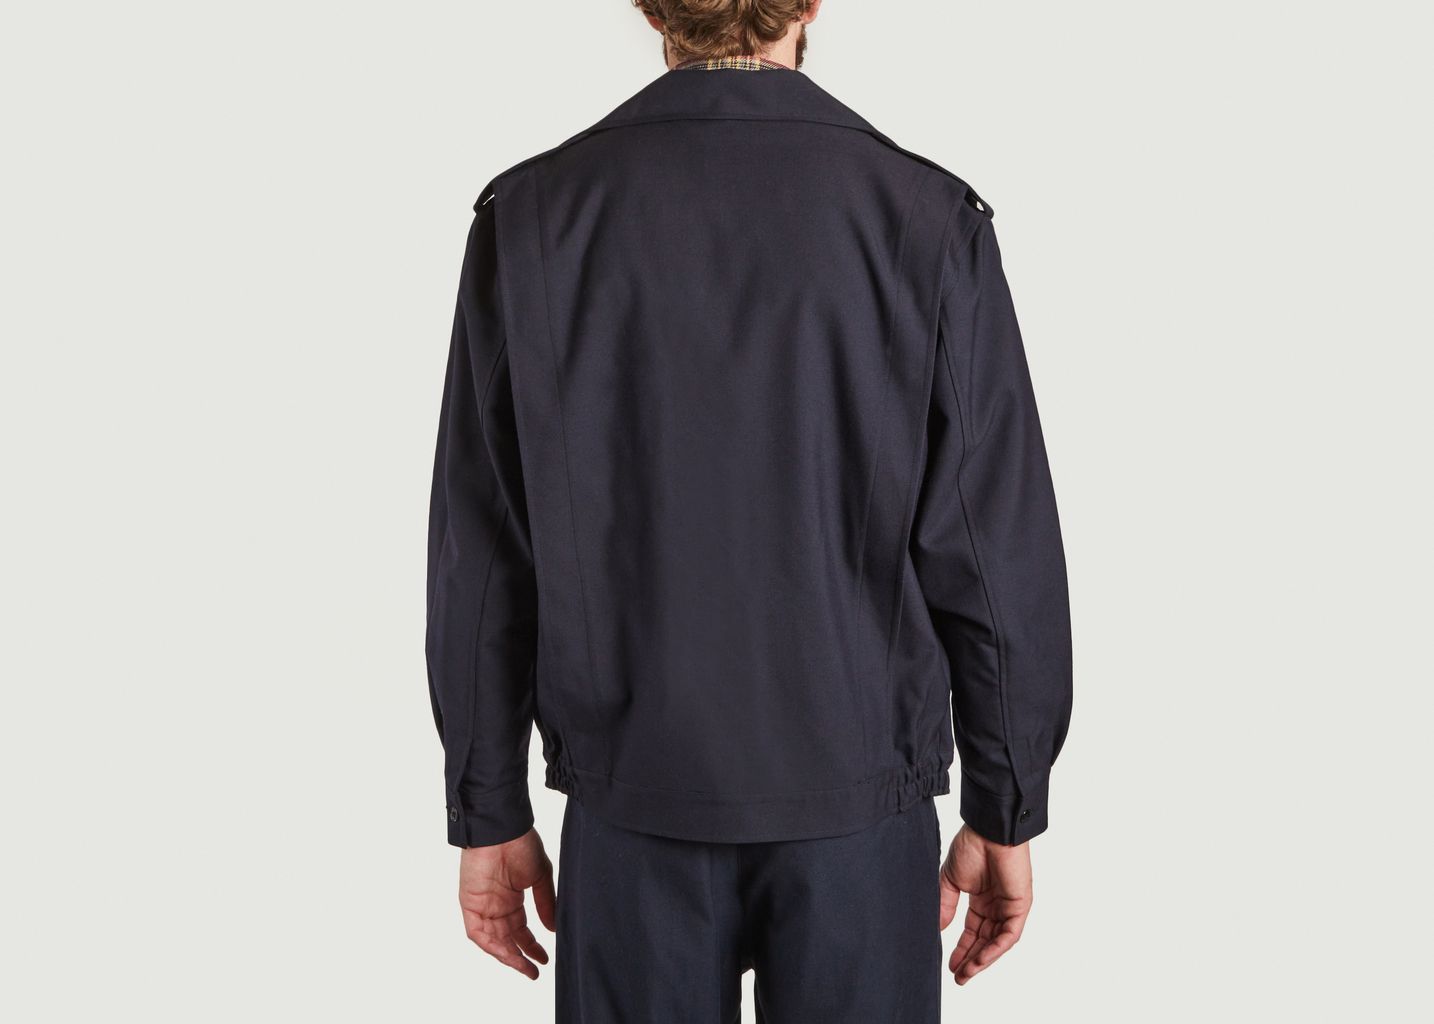 Official L\'s patch jacket - Santi Billie